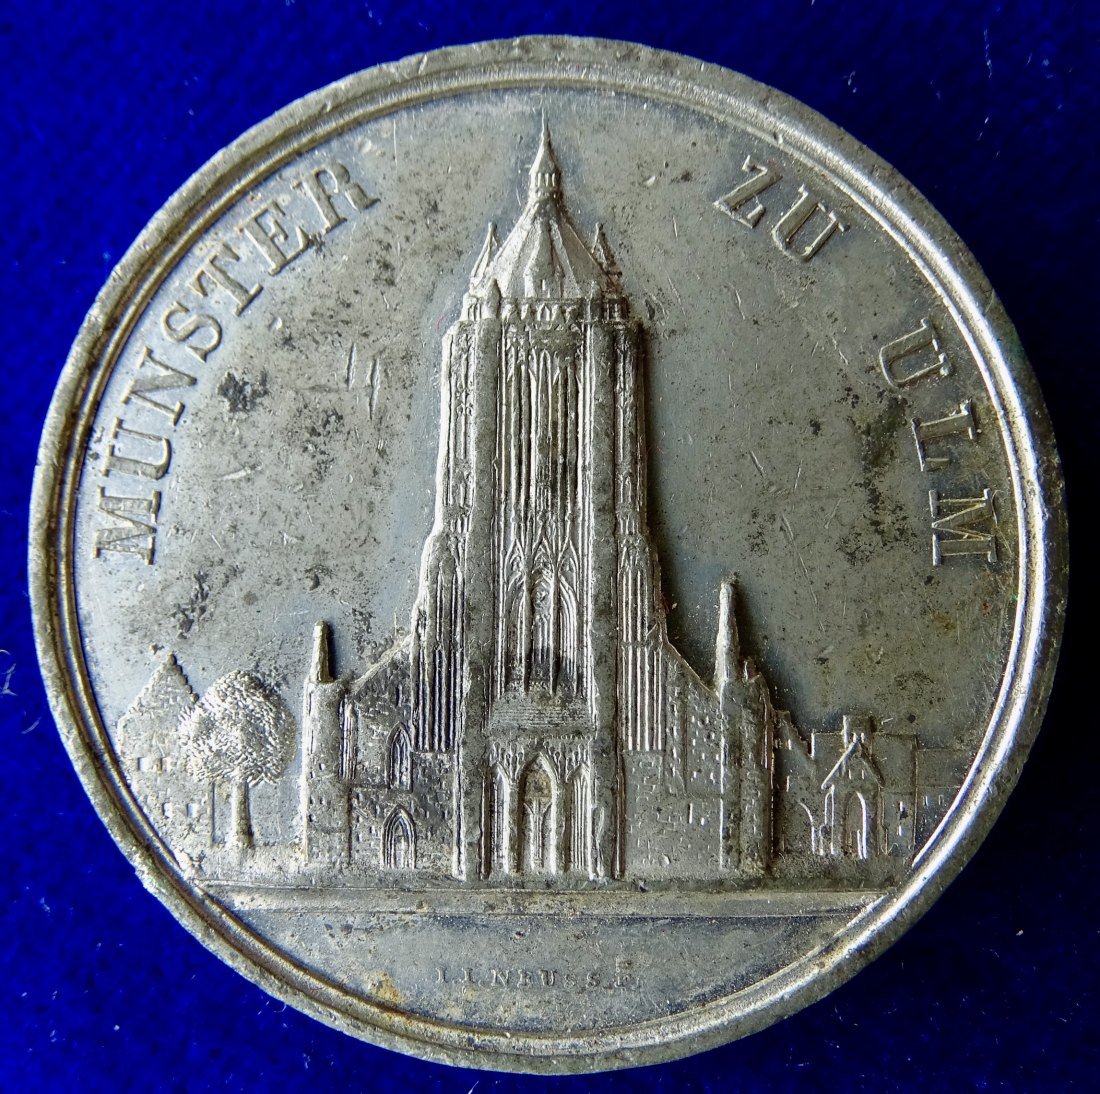  Ulm, Württemberg, Zinn- Medaille um 1844 o.J.  auf den Weiterbau des Ulmer Münsters.   